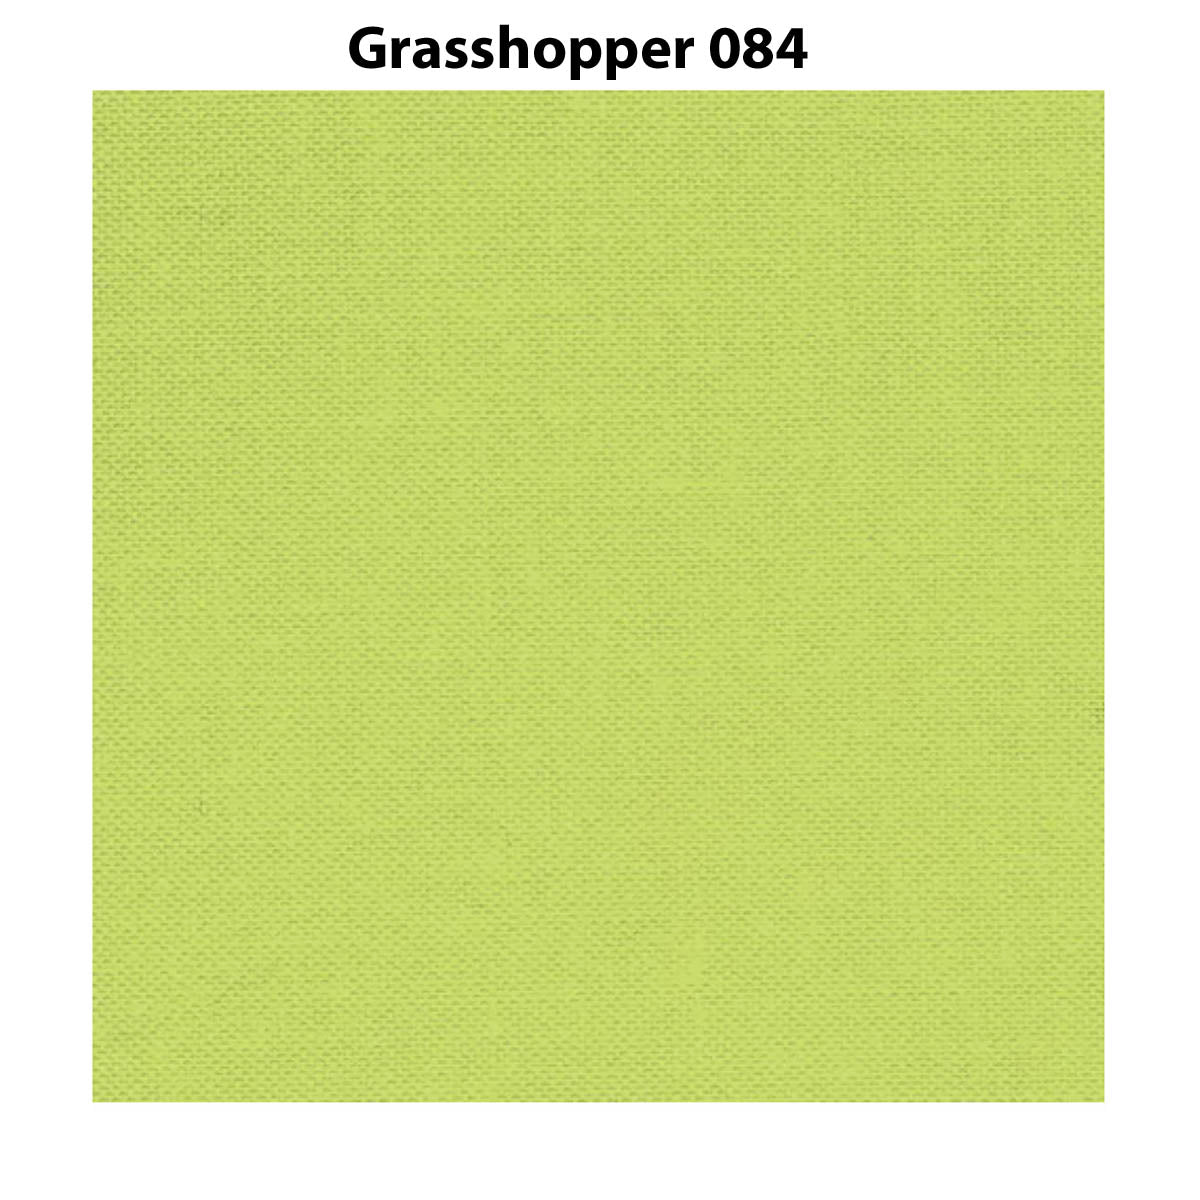 D/S Devonstone Solids - 084 Grasshopper